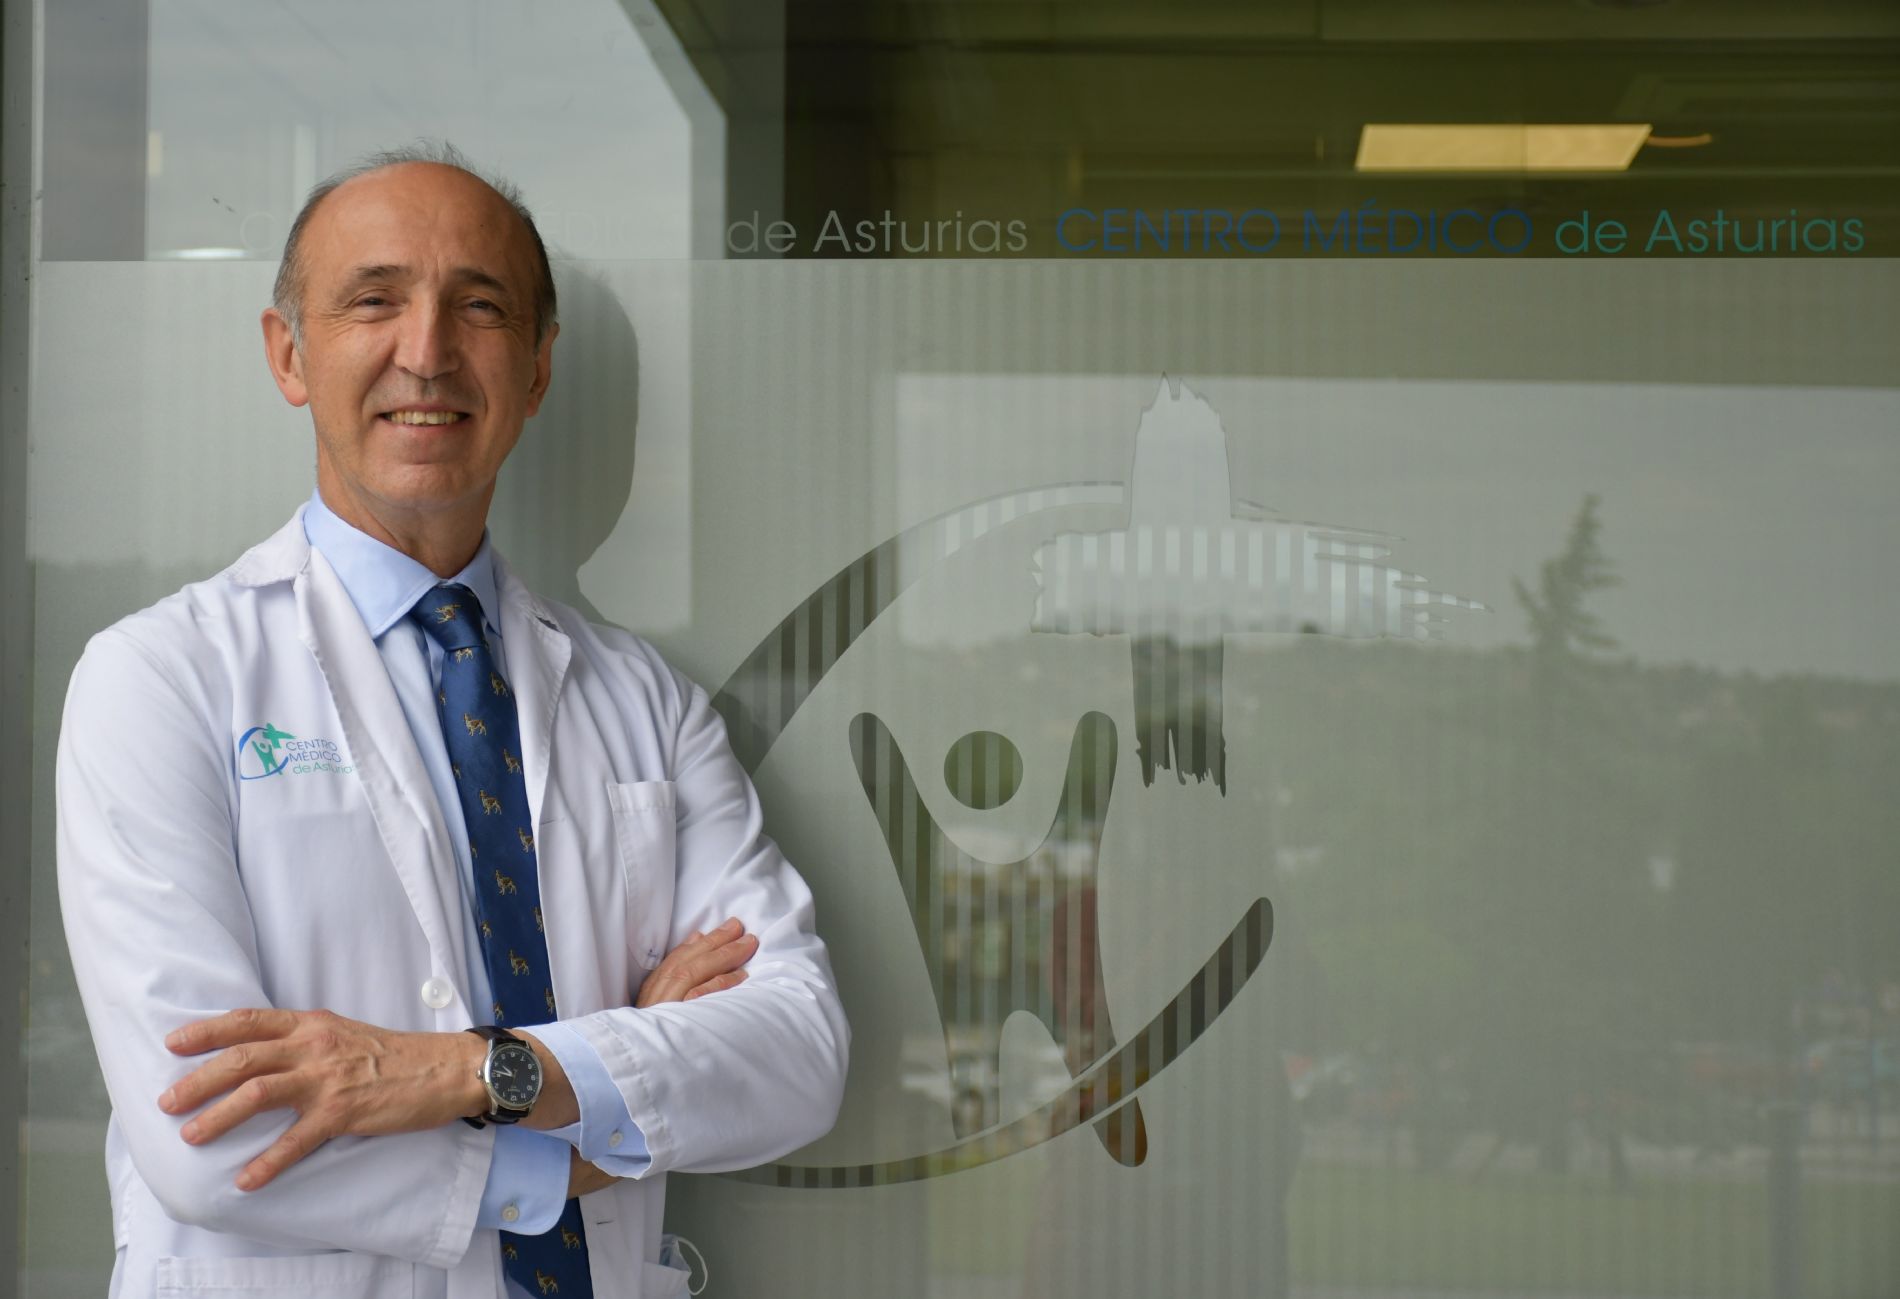 Doctor José María Fernández-Valdés Fernández